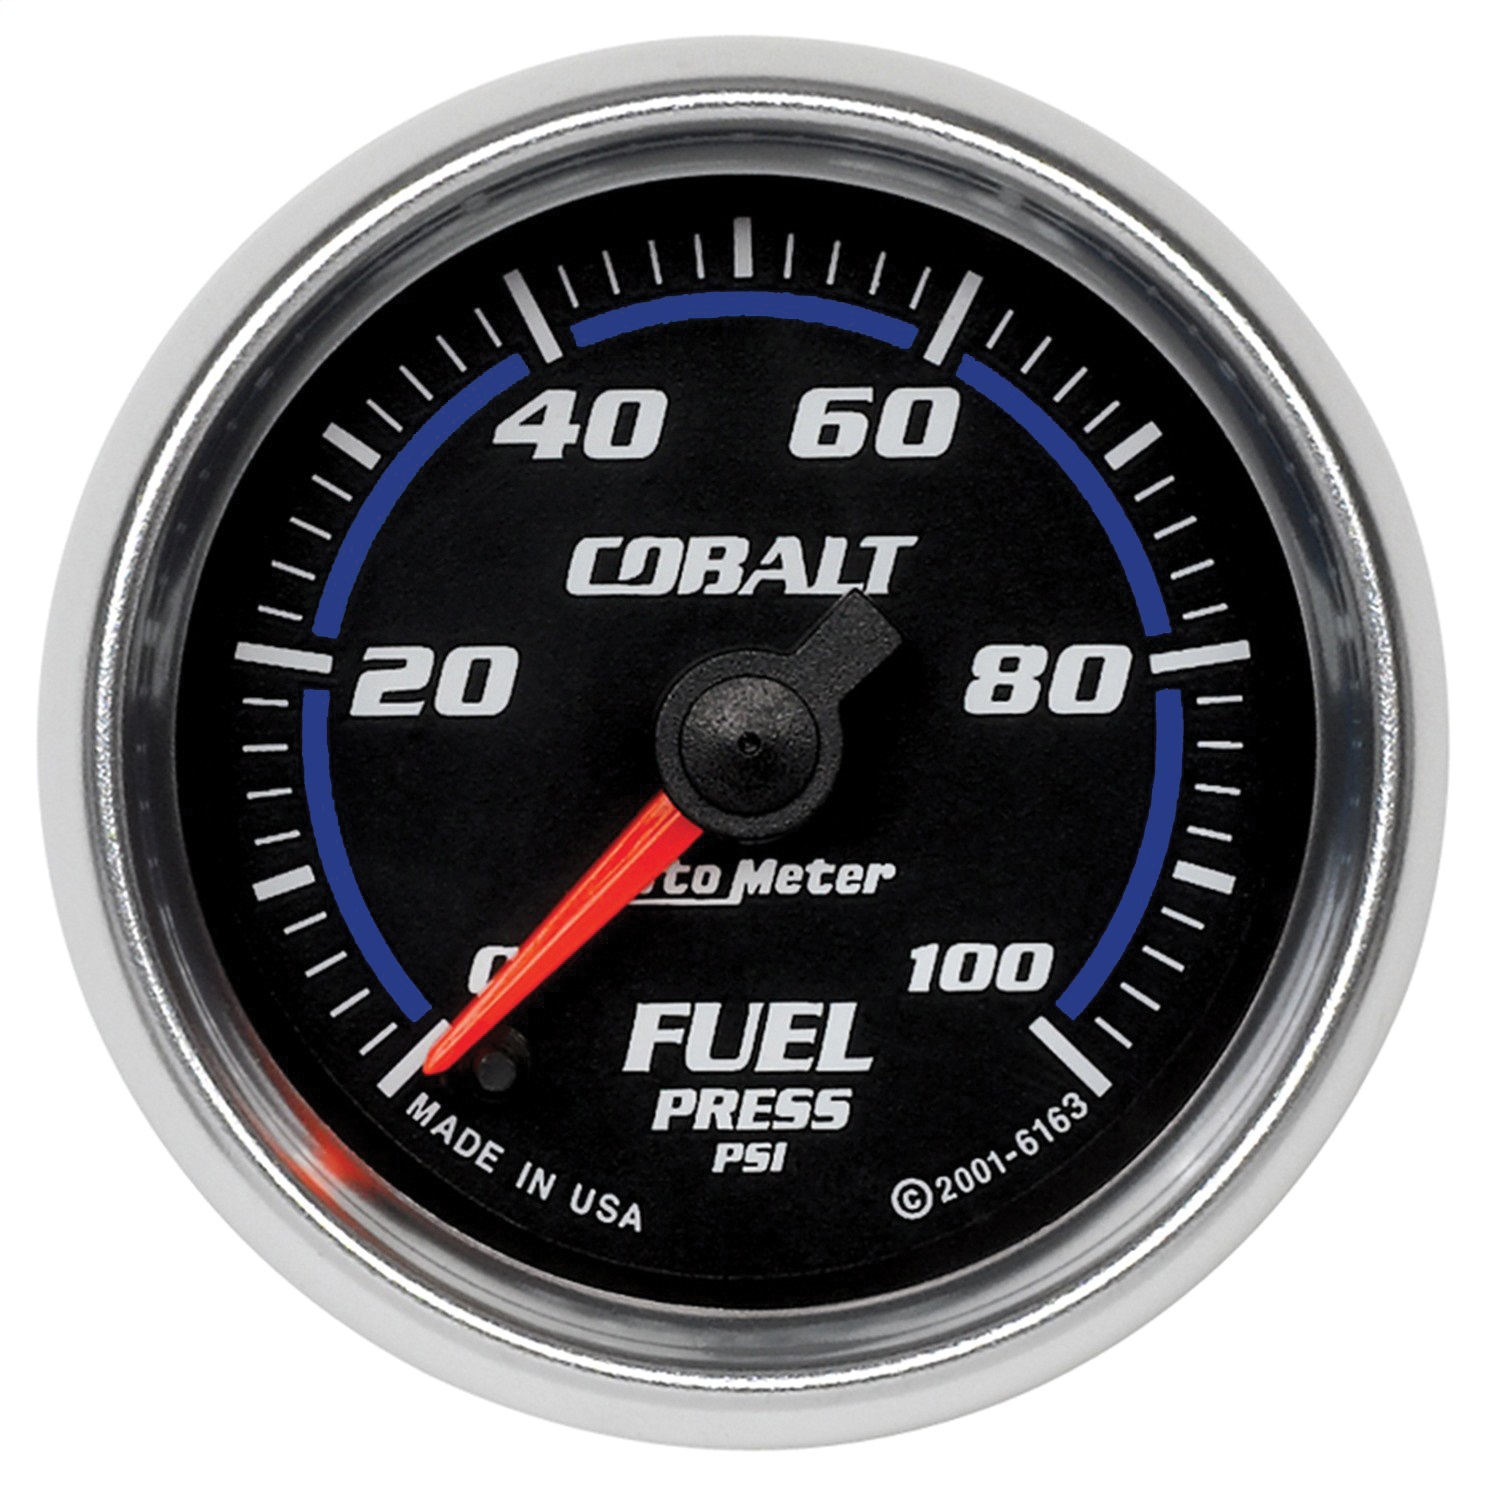 Auto Meter Auto Meter 6163 Cobalt; Electric Fuel Pressure Gauge